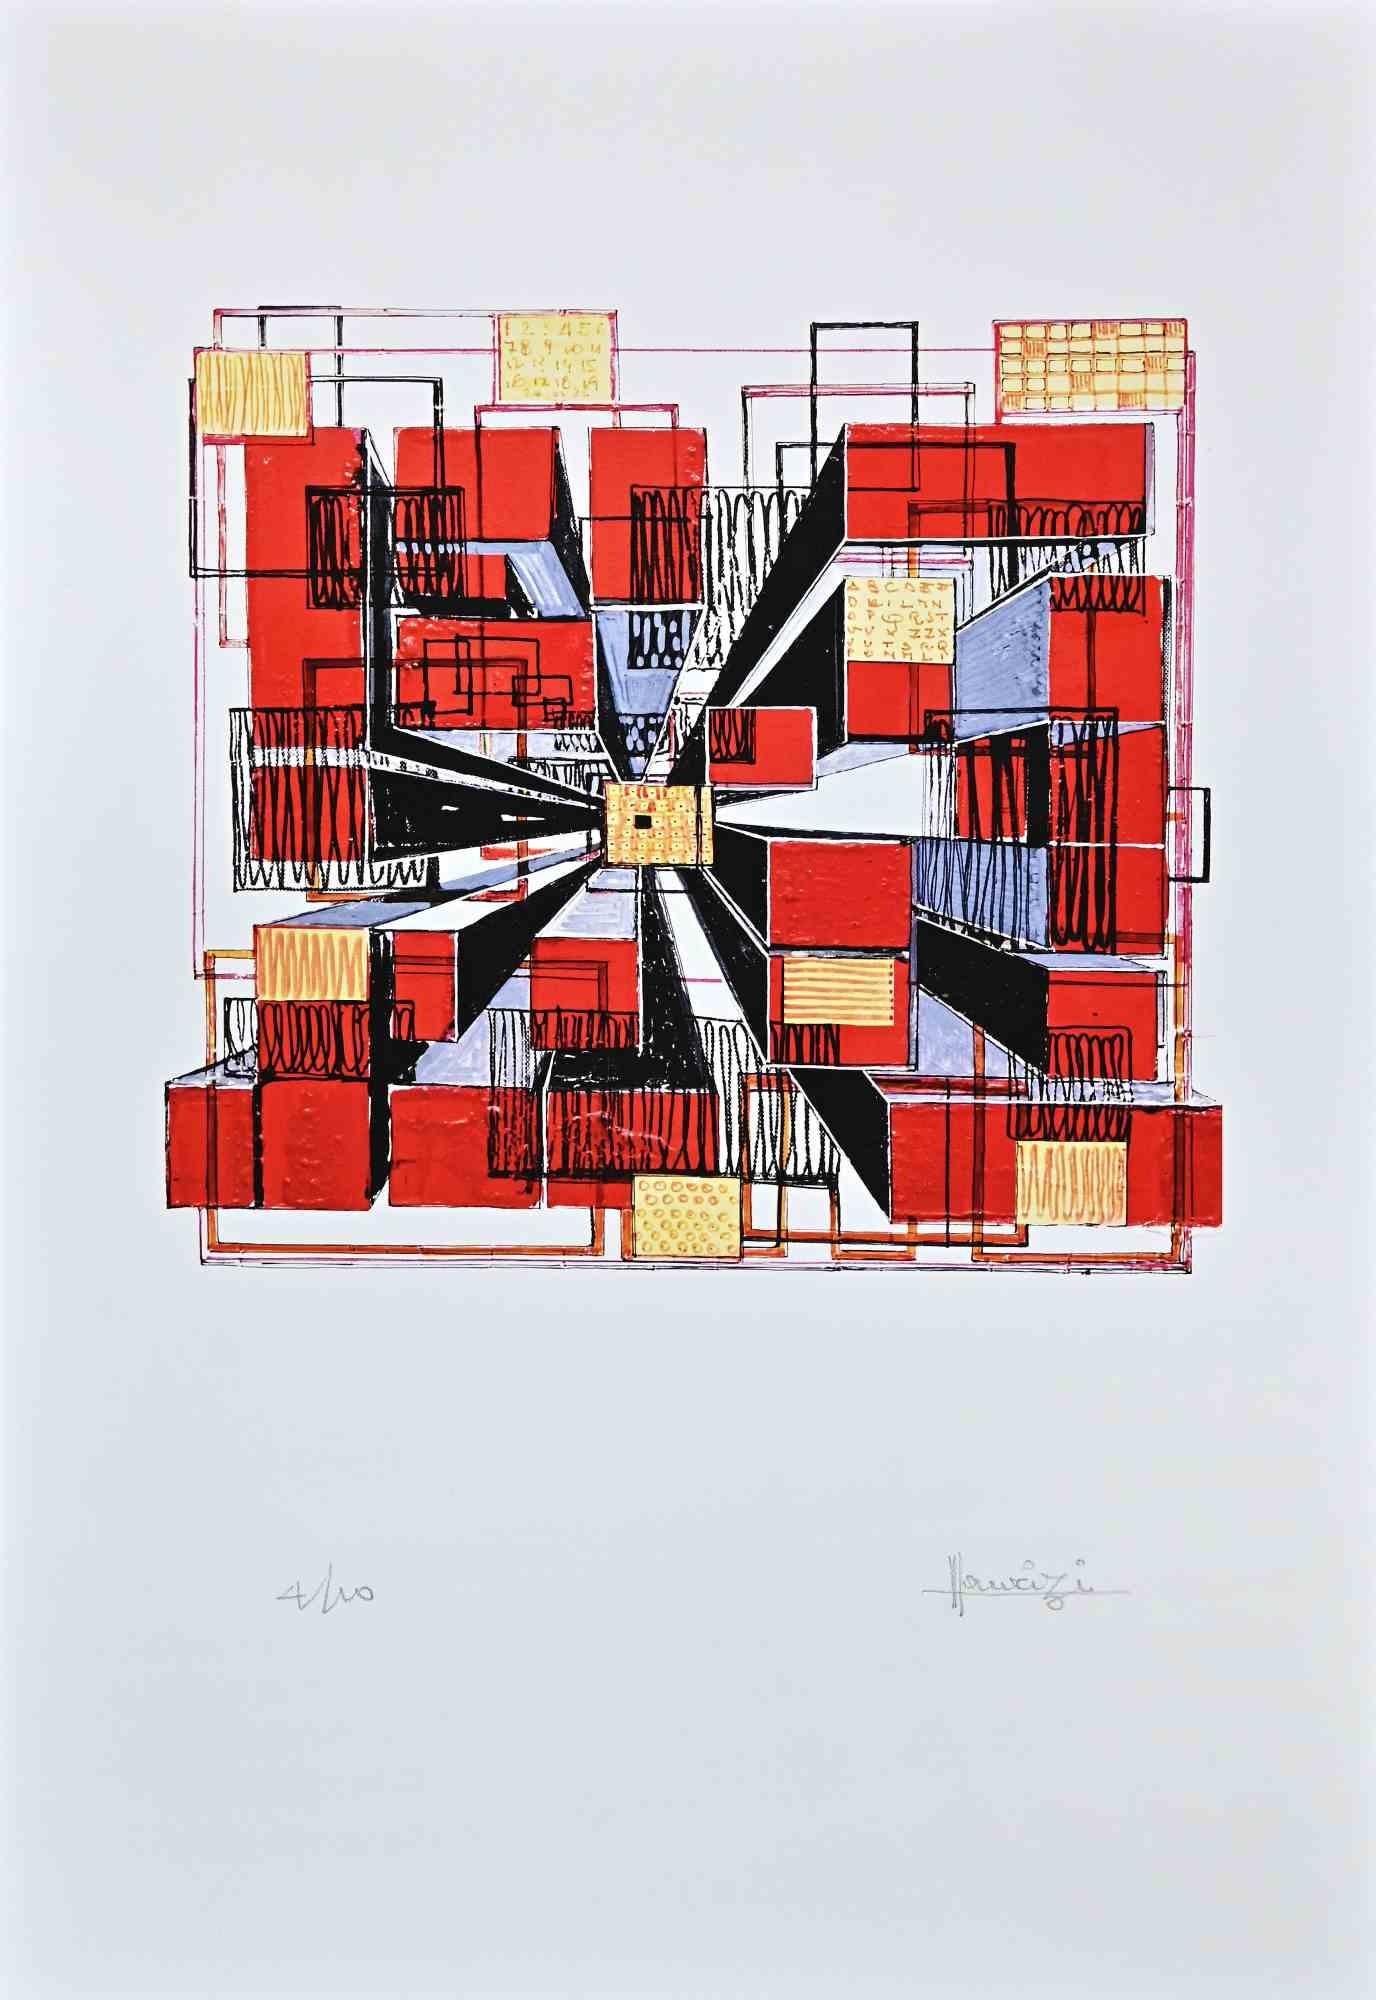 Perspective in Red ist ein Original-Siebdruck auf weißem Papier, der vom italienischen Künstler Tonino Maurizi realisiert wurde.

Rechts unten handsigniert.

Unten links nummeriert, Auflage: 4/100 Abzüge.

Sehr guter Zustand.